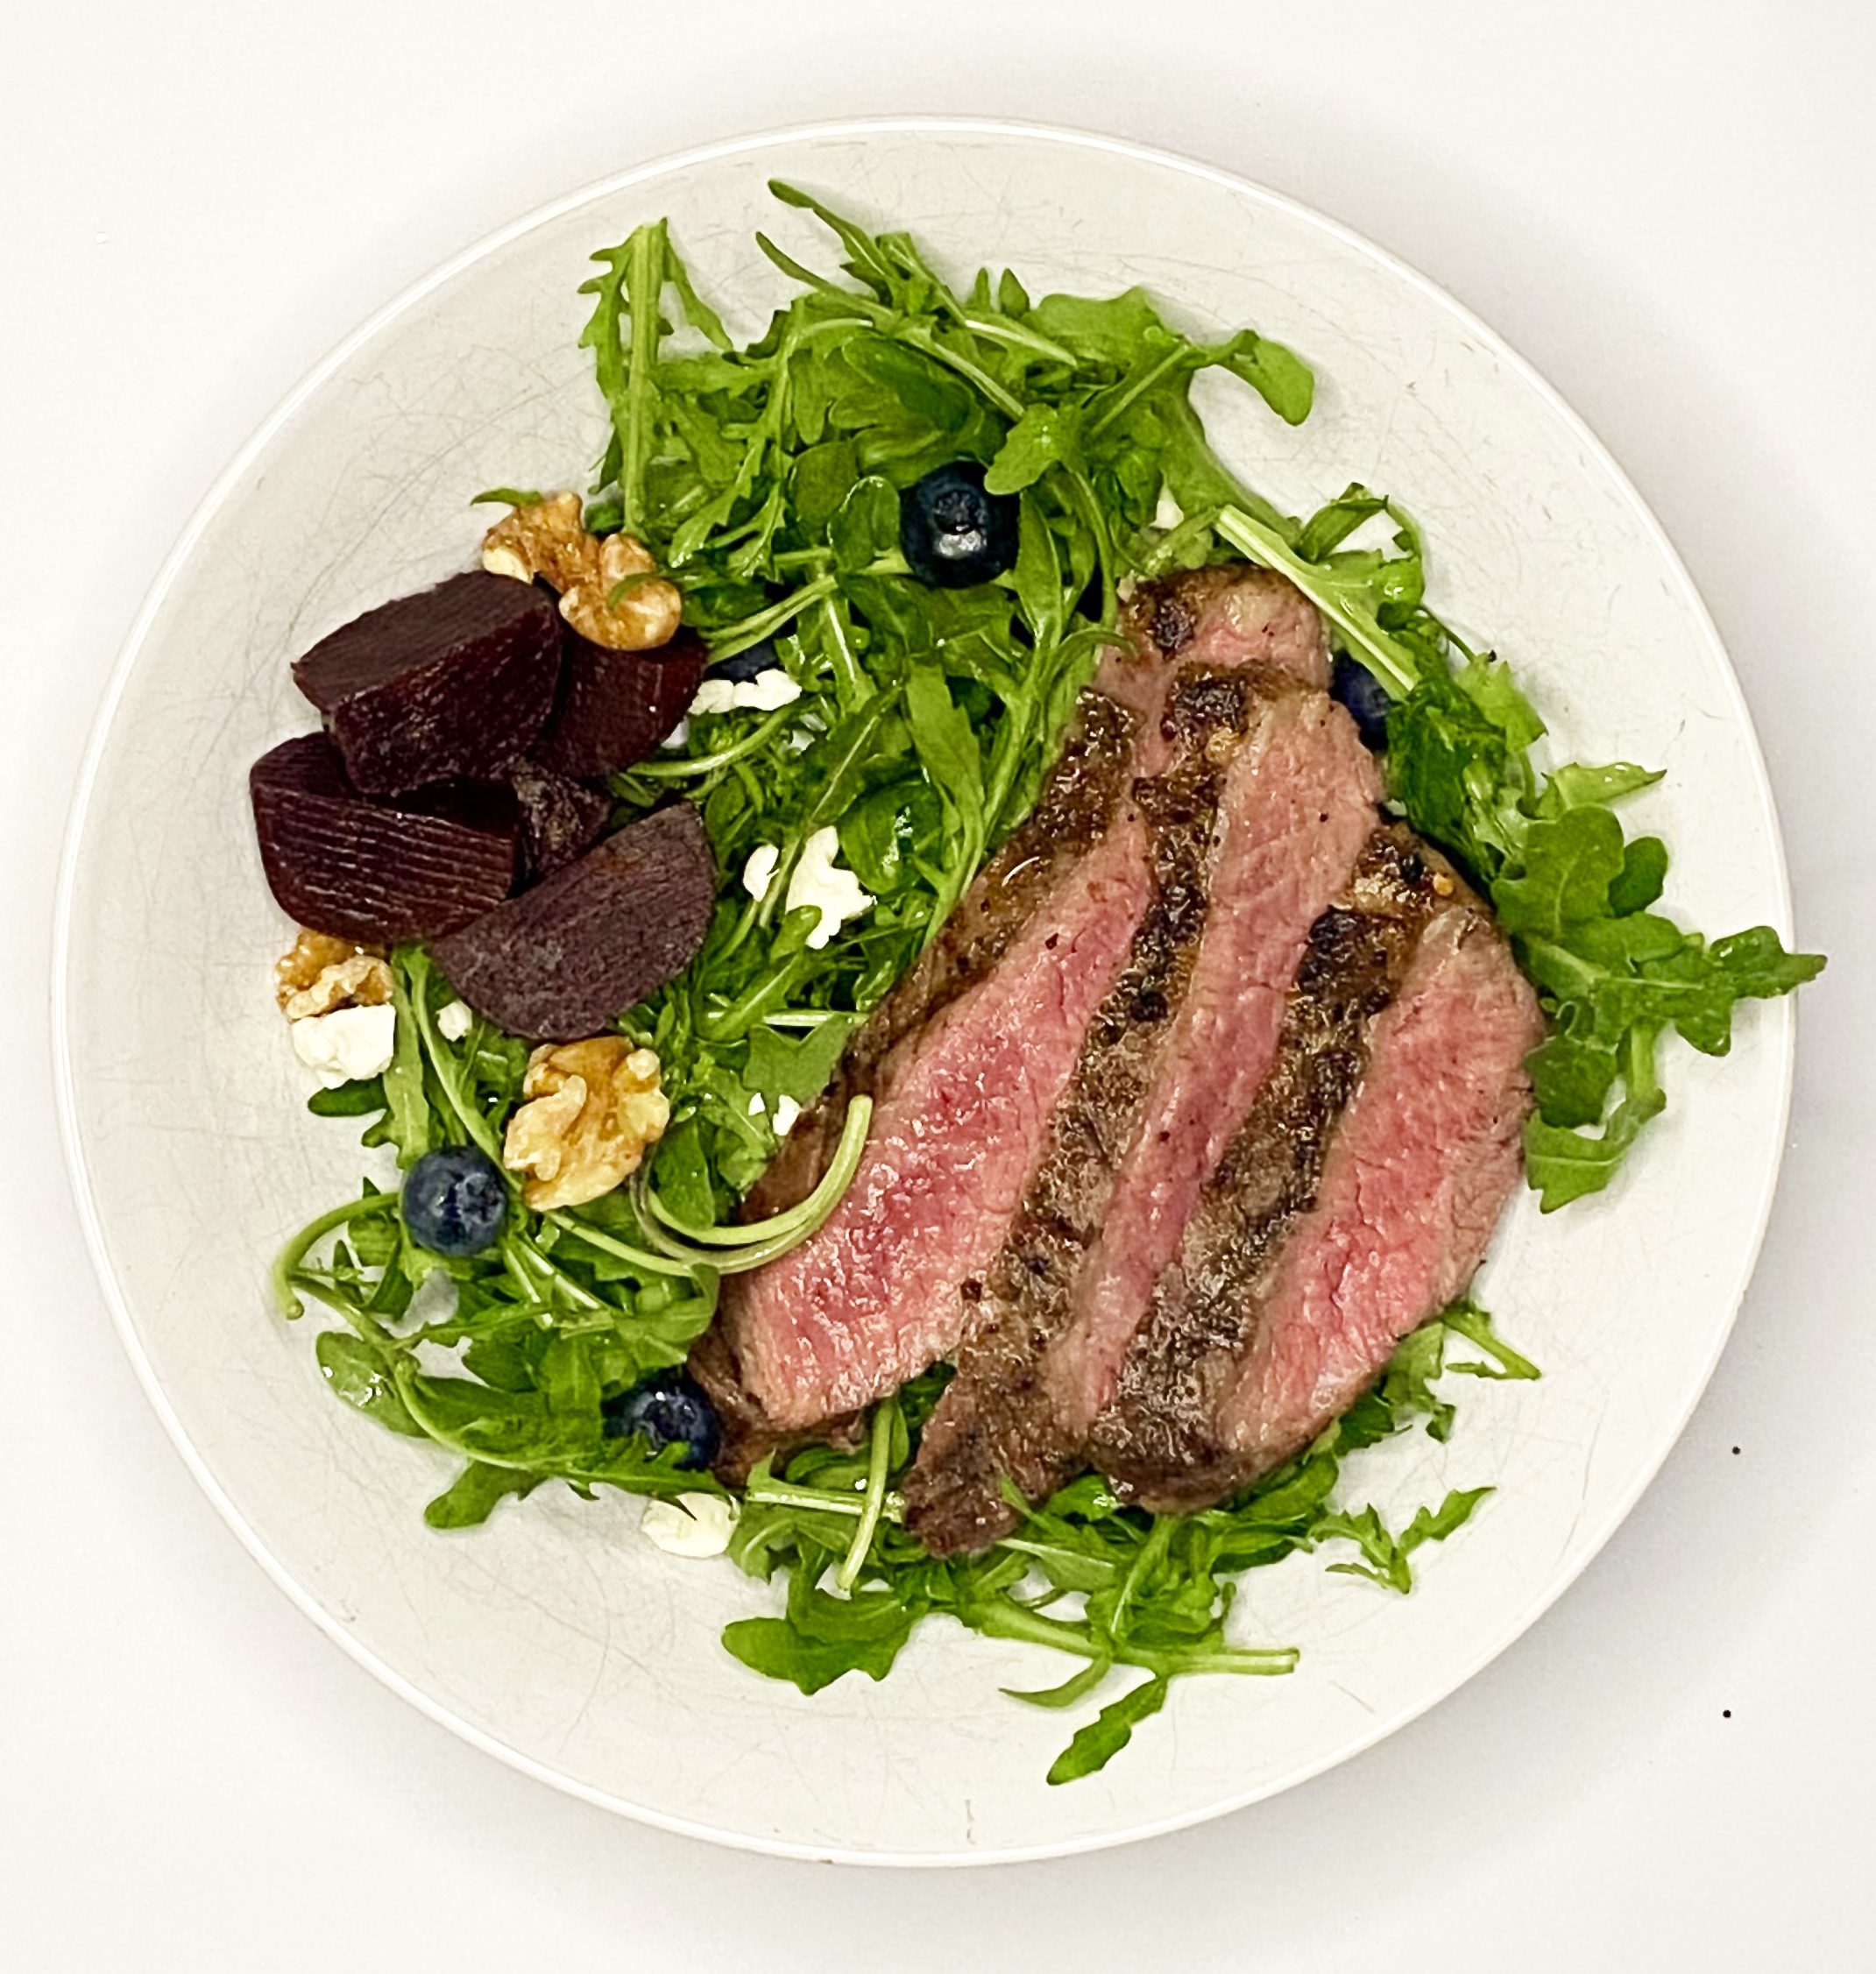 Superfood Steak Salad Fertility Recipe to Thicken Uterine Lining ...